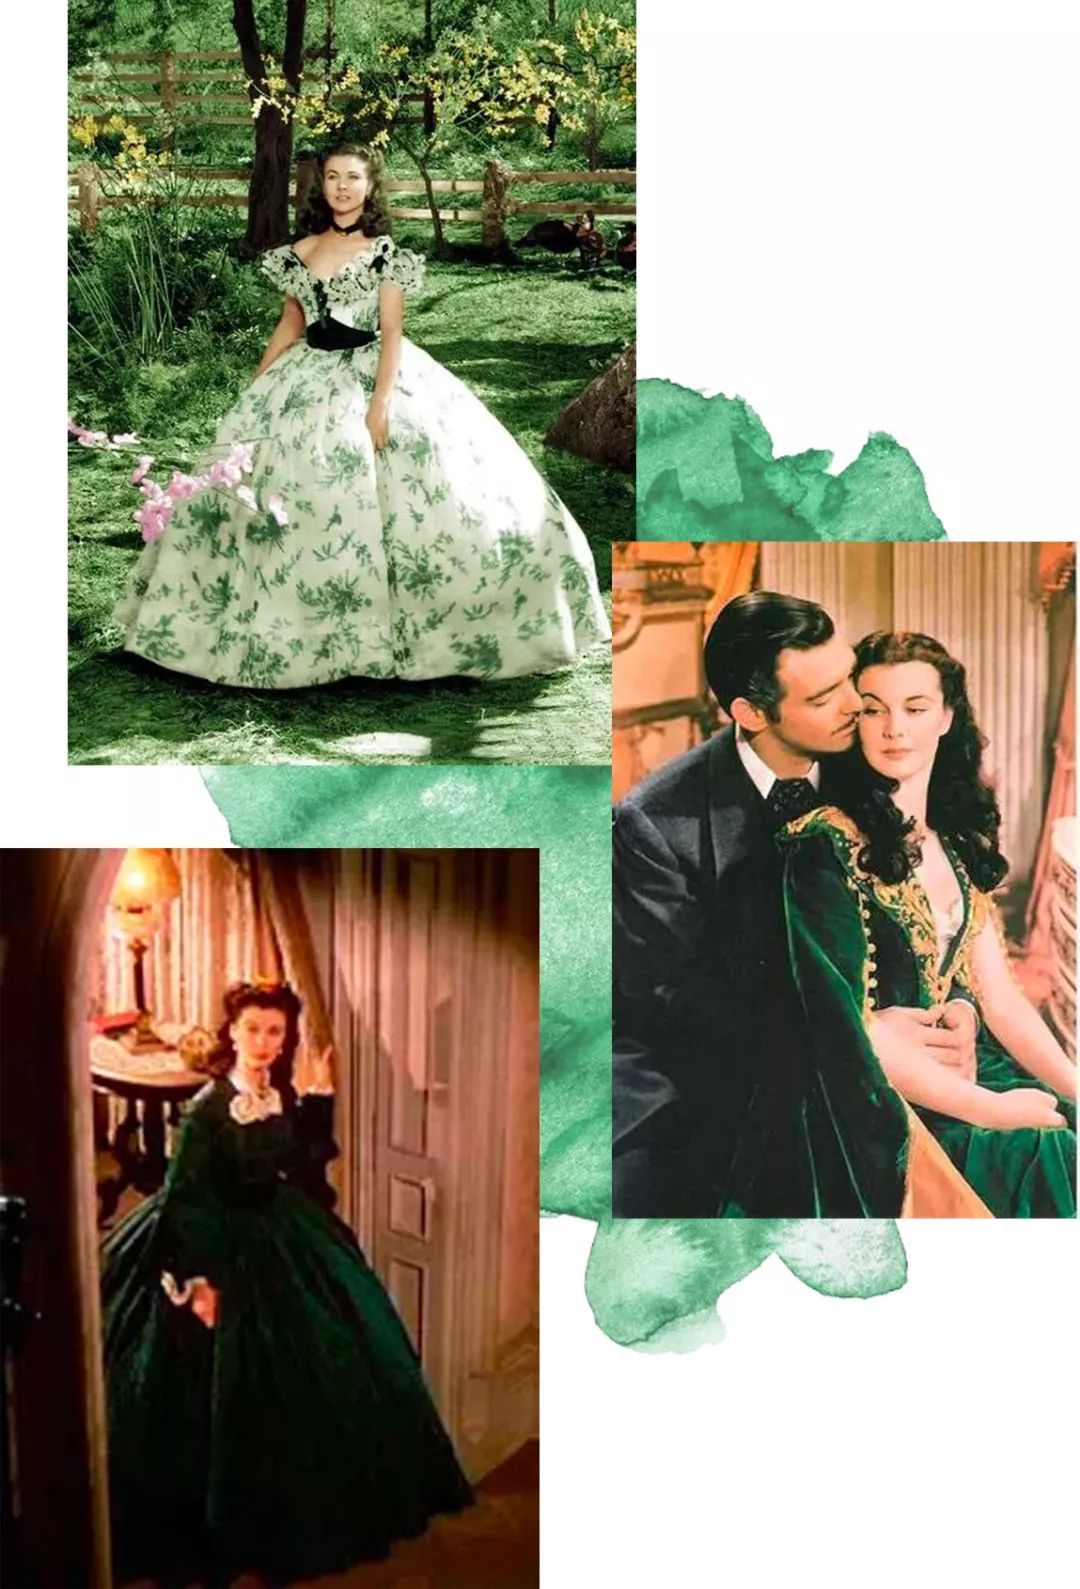 其实《乱世佳人》里有好几条绿裙,分布在斯佳丽成长的各个时期,甚至都